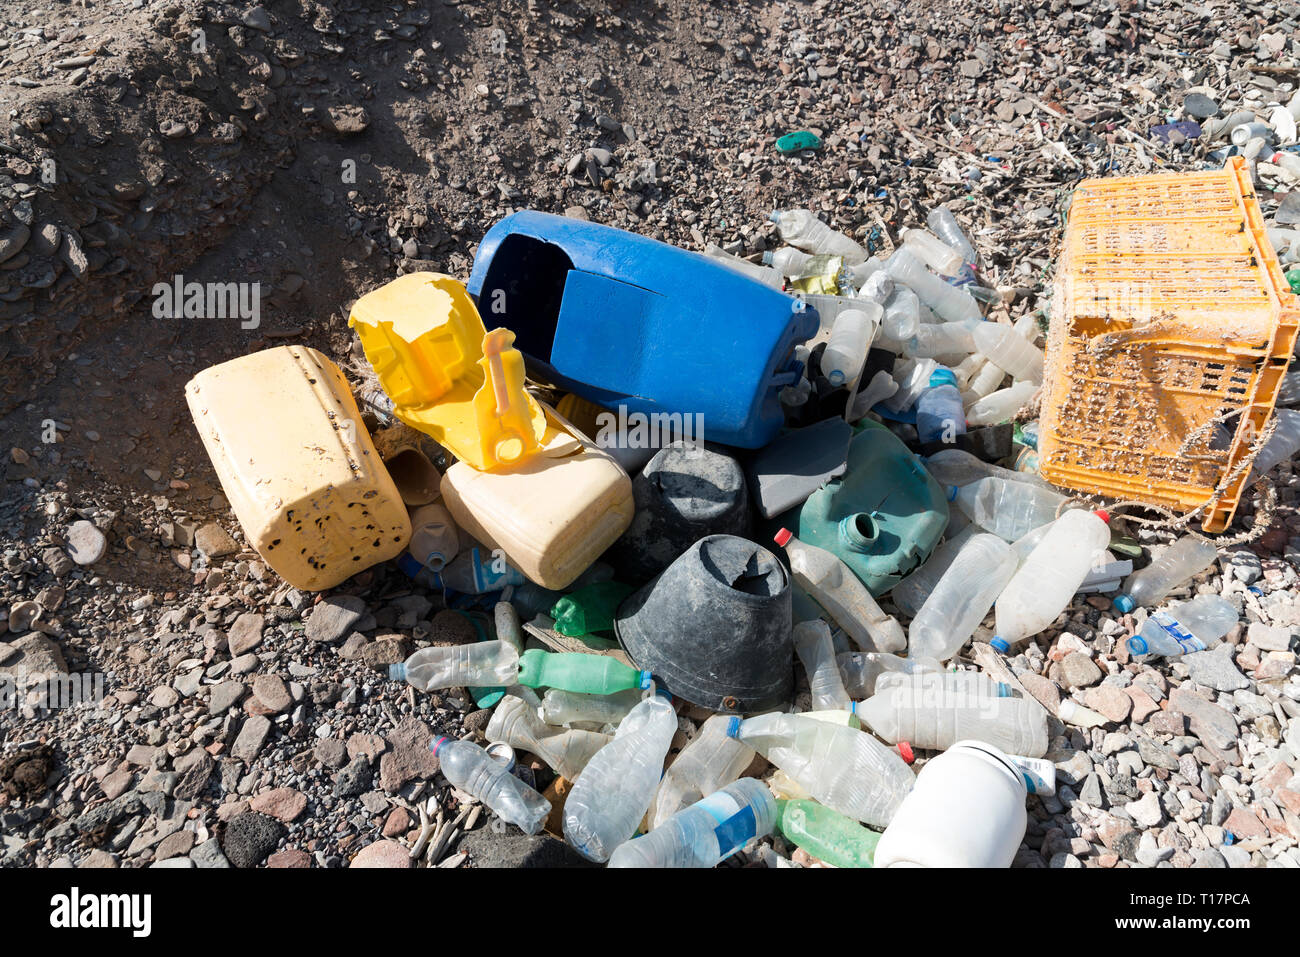 Kunststoff dump am Strand von Ghoubbet-el-Kharab - Mann - Umweltkatastrophe gemacht Stockfoto